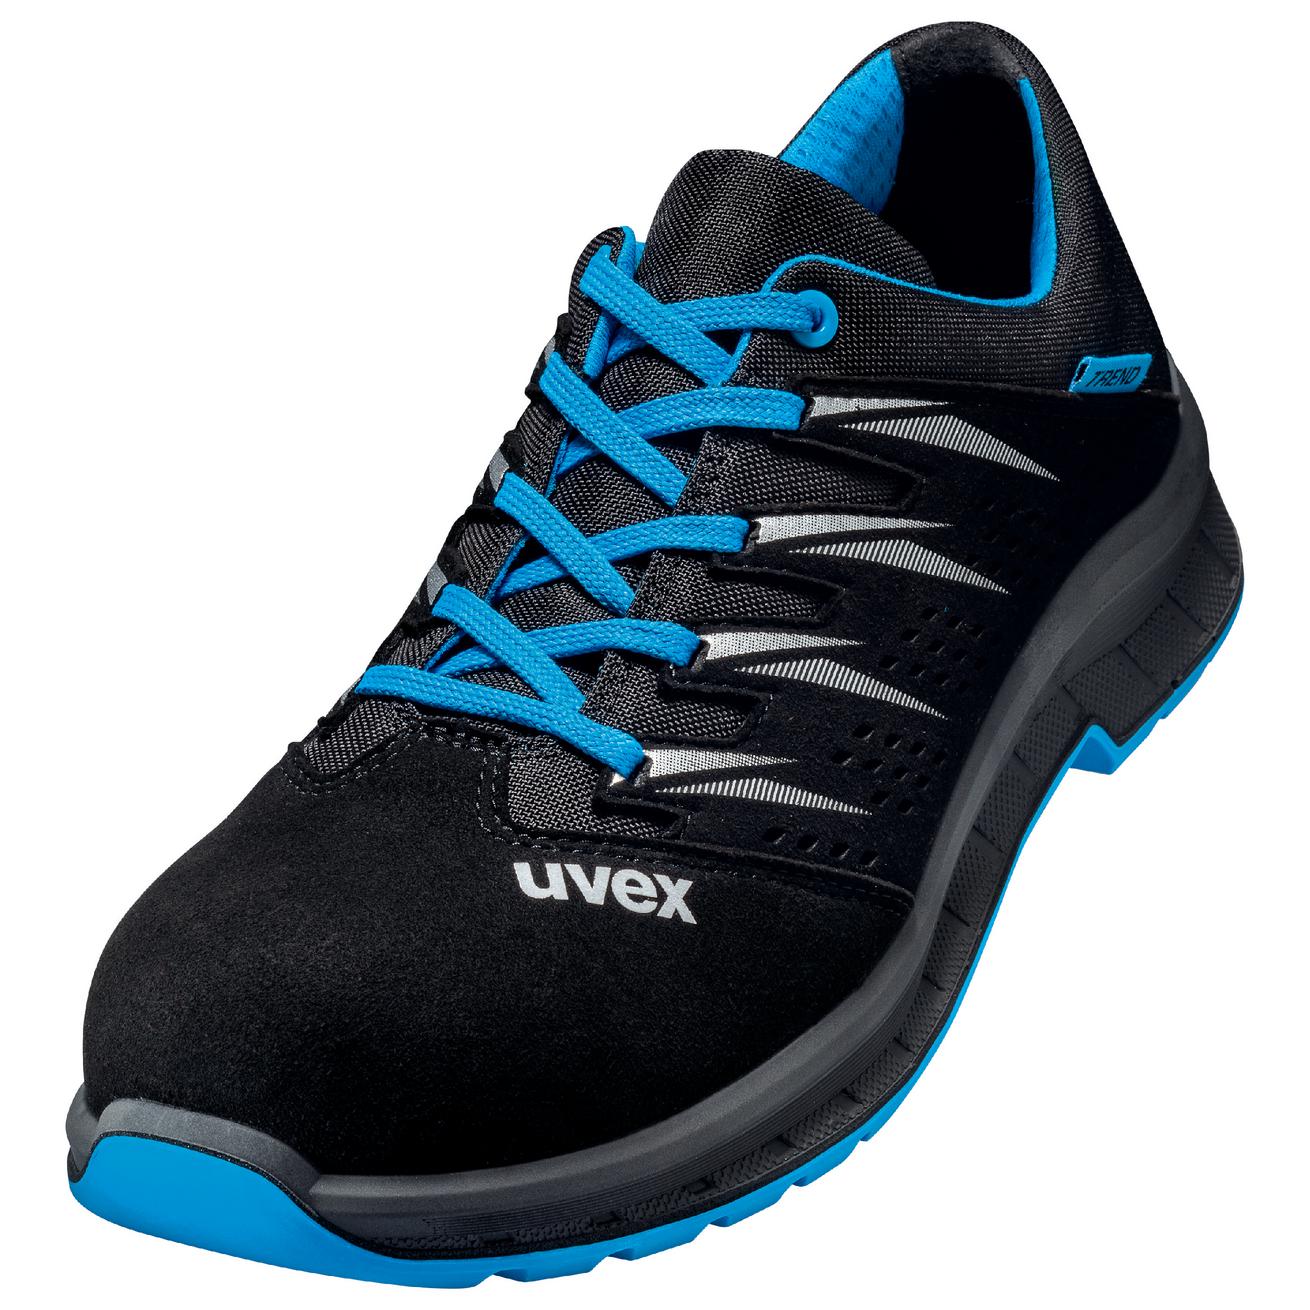 Perf. polobotka obuv uvex 2 trend, šíře 11, S1 SRC, černá/modrá 6937 Velikost: 43, Kód produktu: 6937843